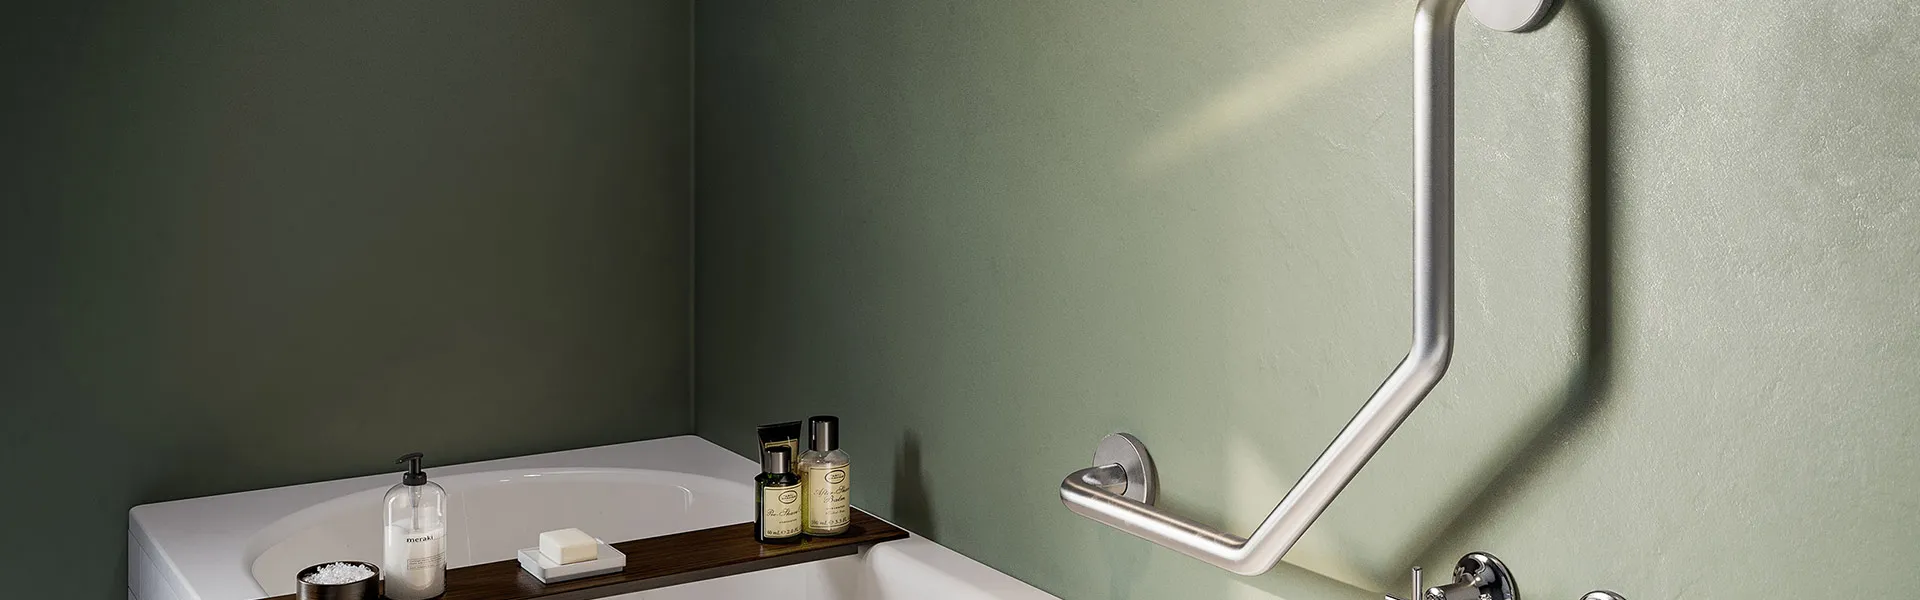 Bathroom Butler RSA home banner image - Grab Rails showing dogleg 2 support